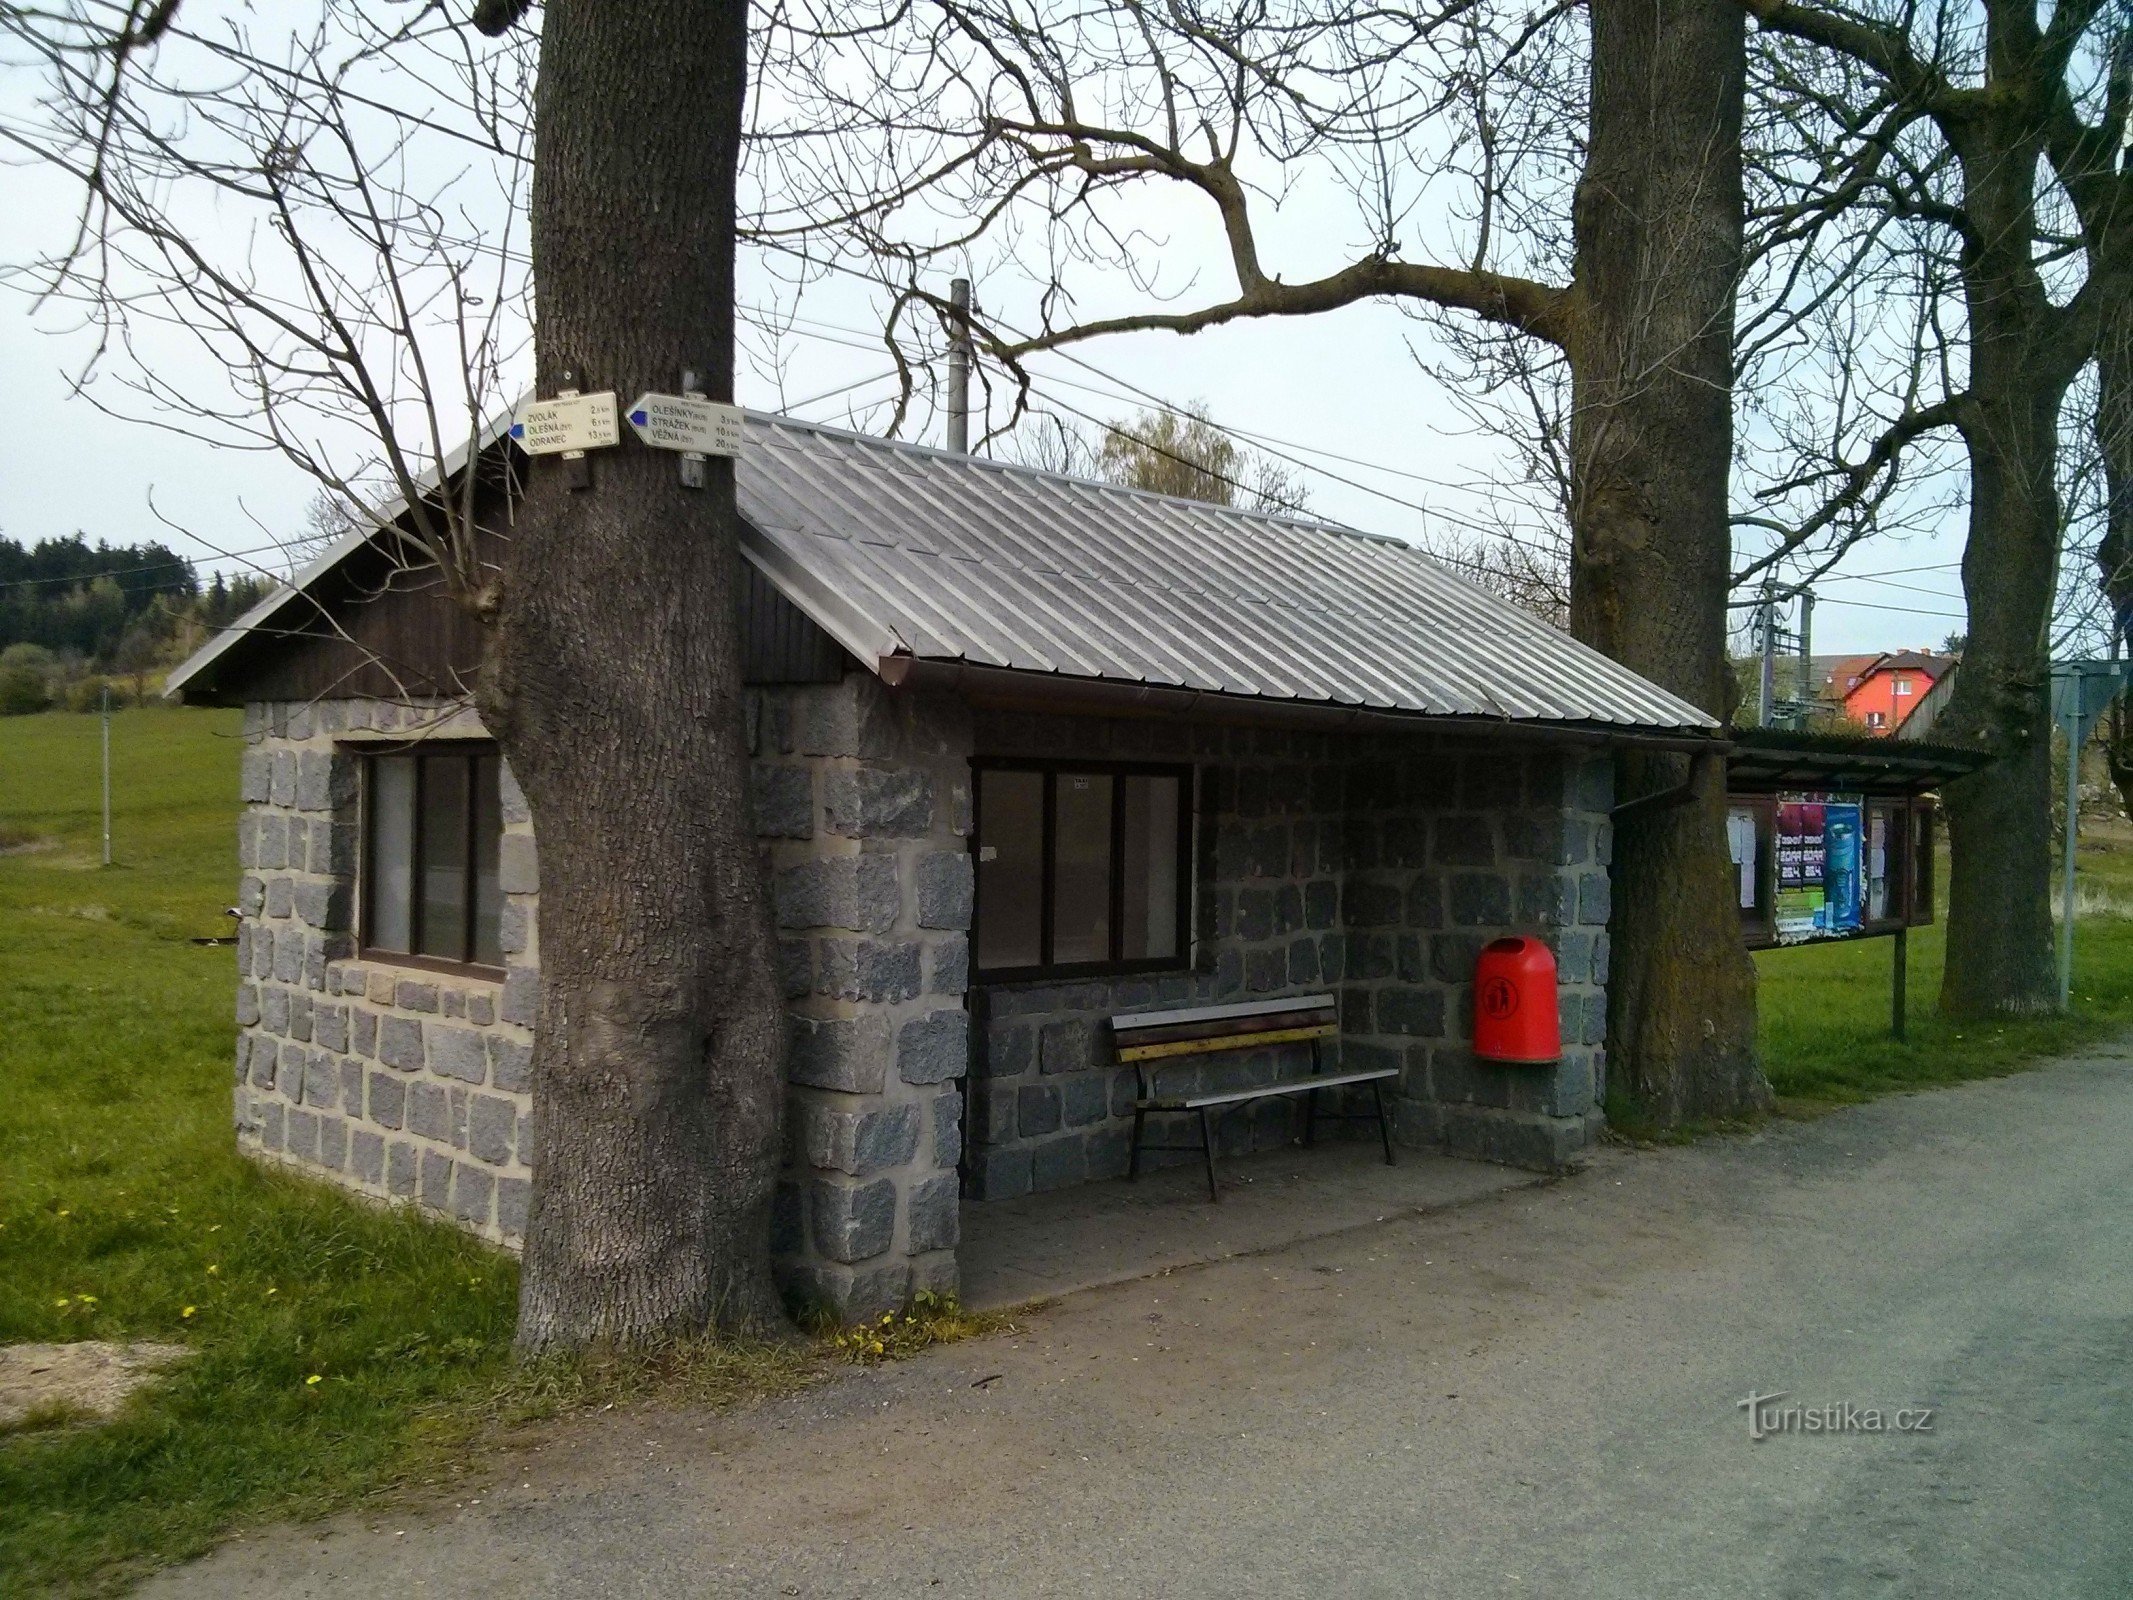 salle d'attente d'autobus